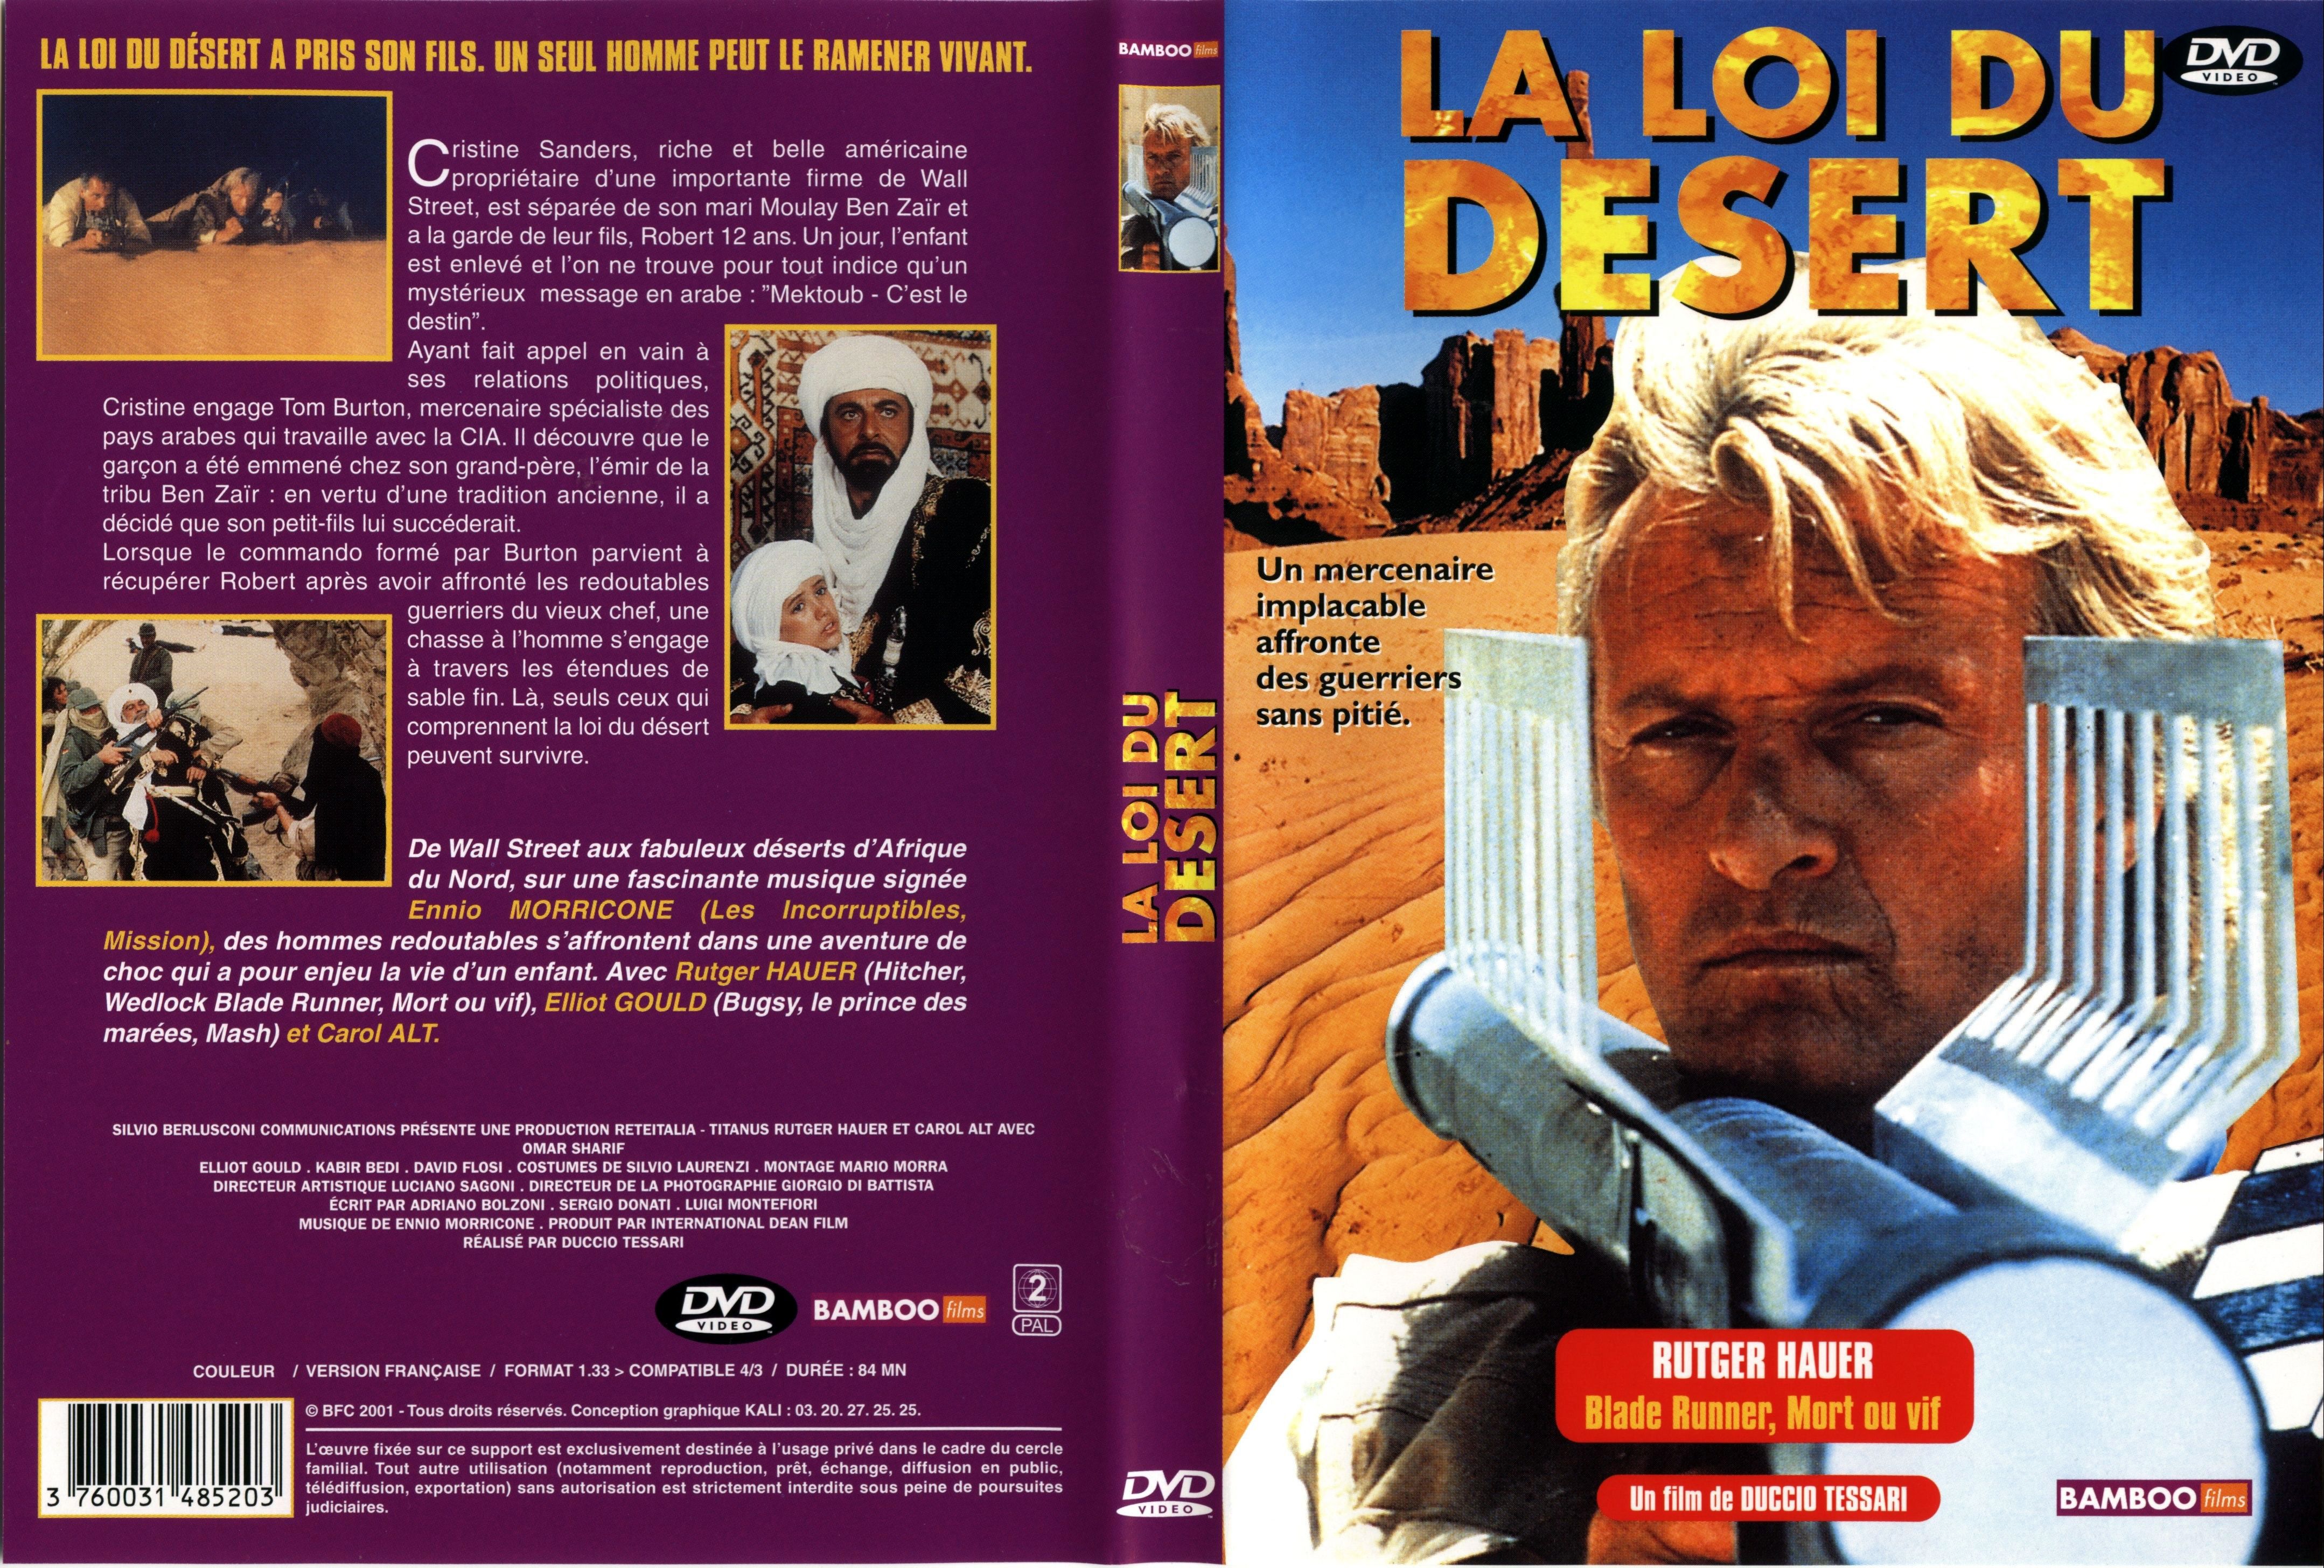 Jaquette DVD La loi du desert